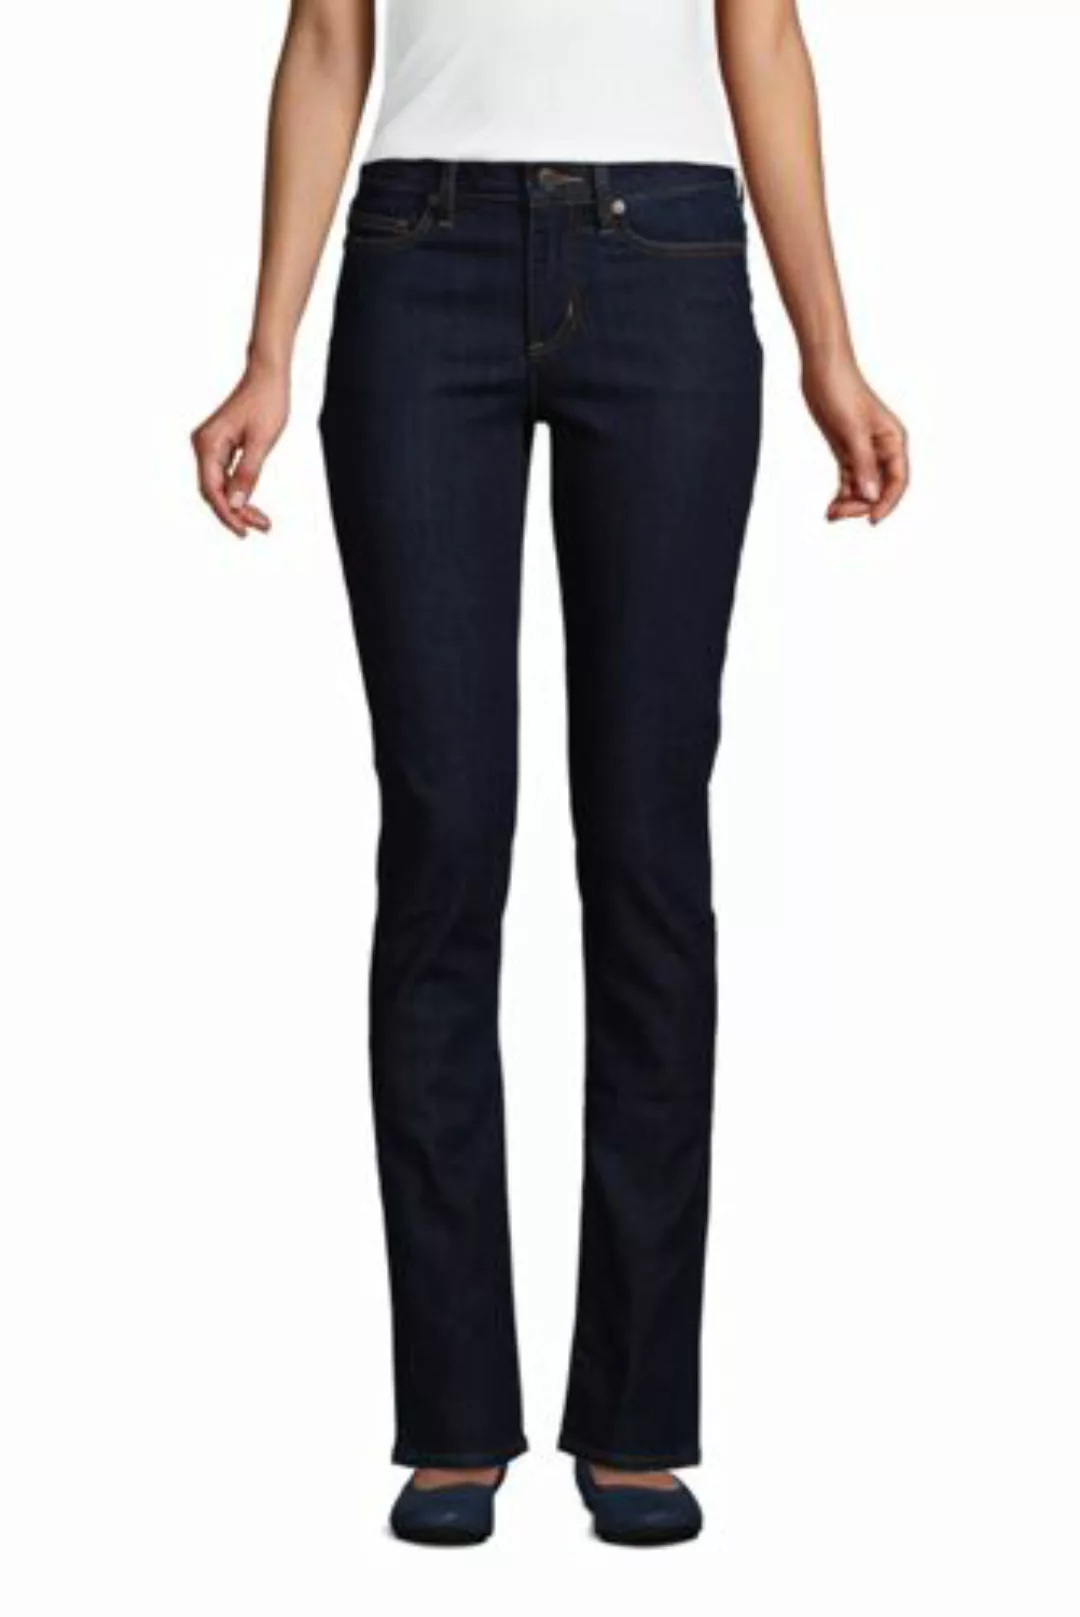 Straight Fit Öko Jeans Mid Waist, Damen, Größe: 46 34 Normal, Blau, Baumwol günstig online kaufen